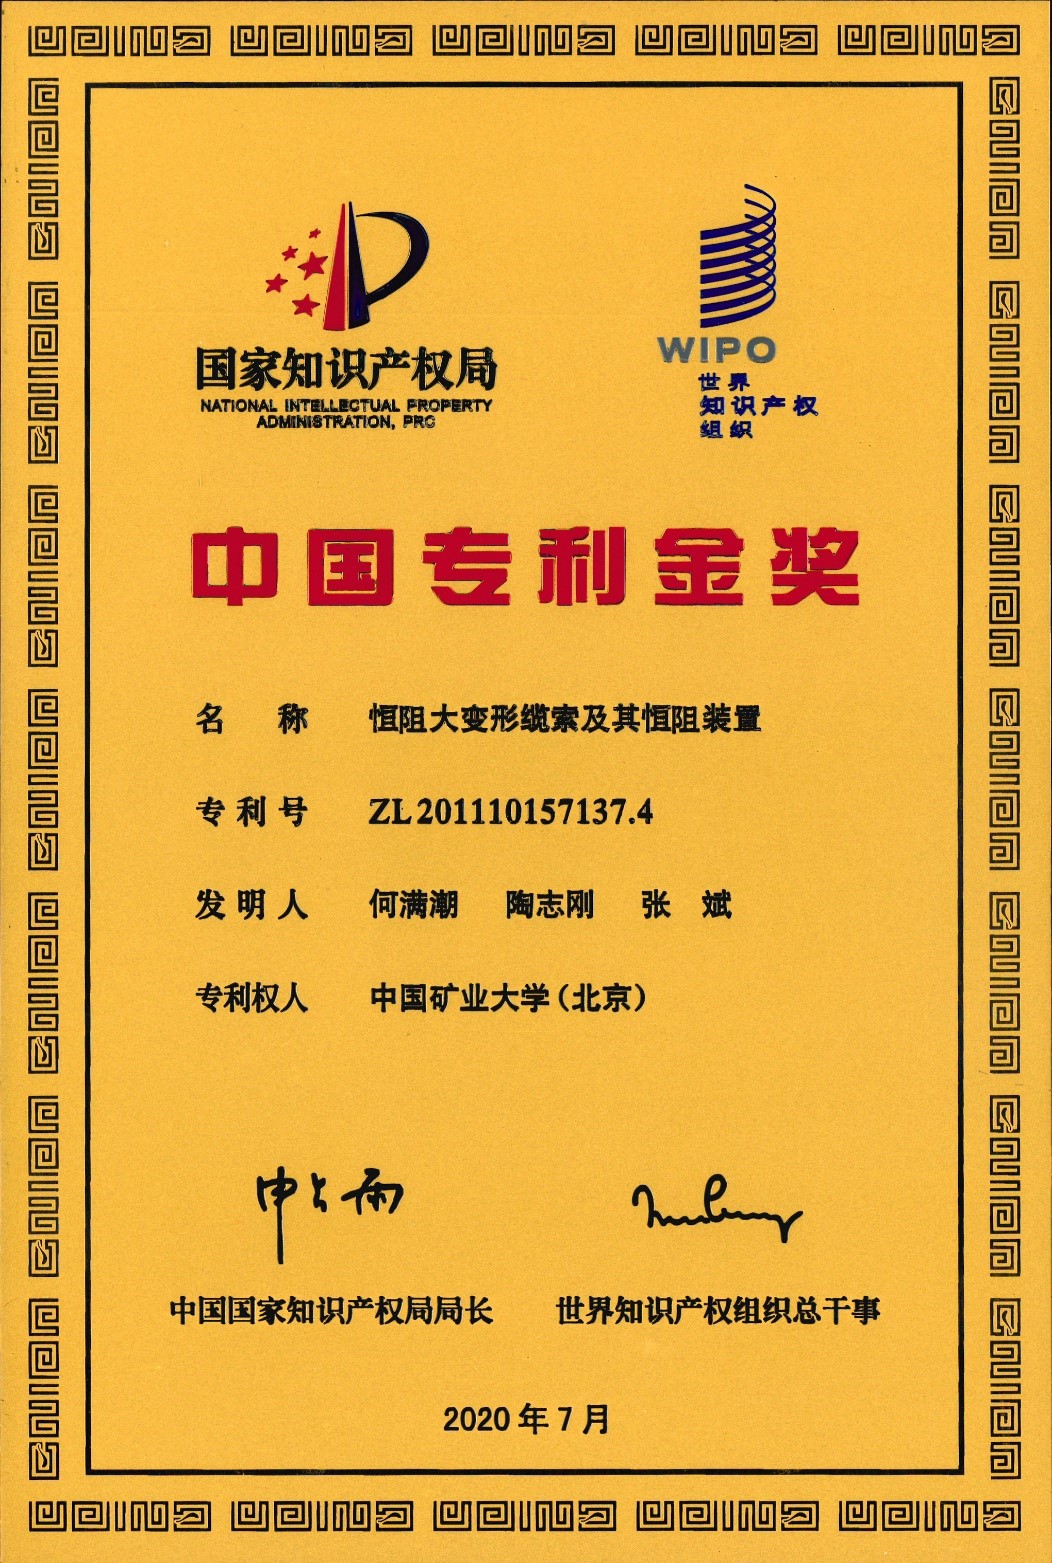 何满潮院士团队成果获第二十一届中国专利奖金奖